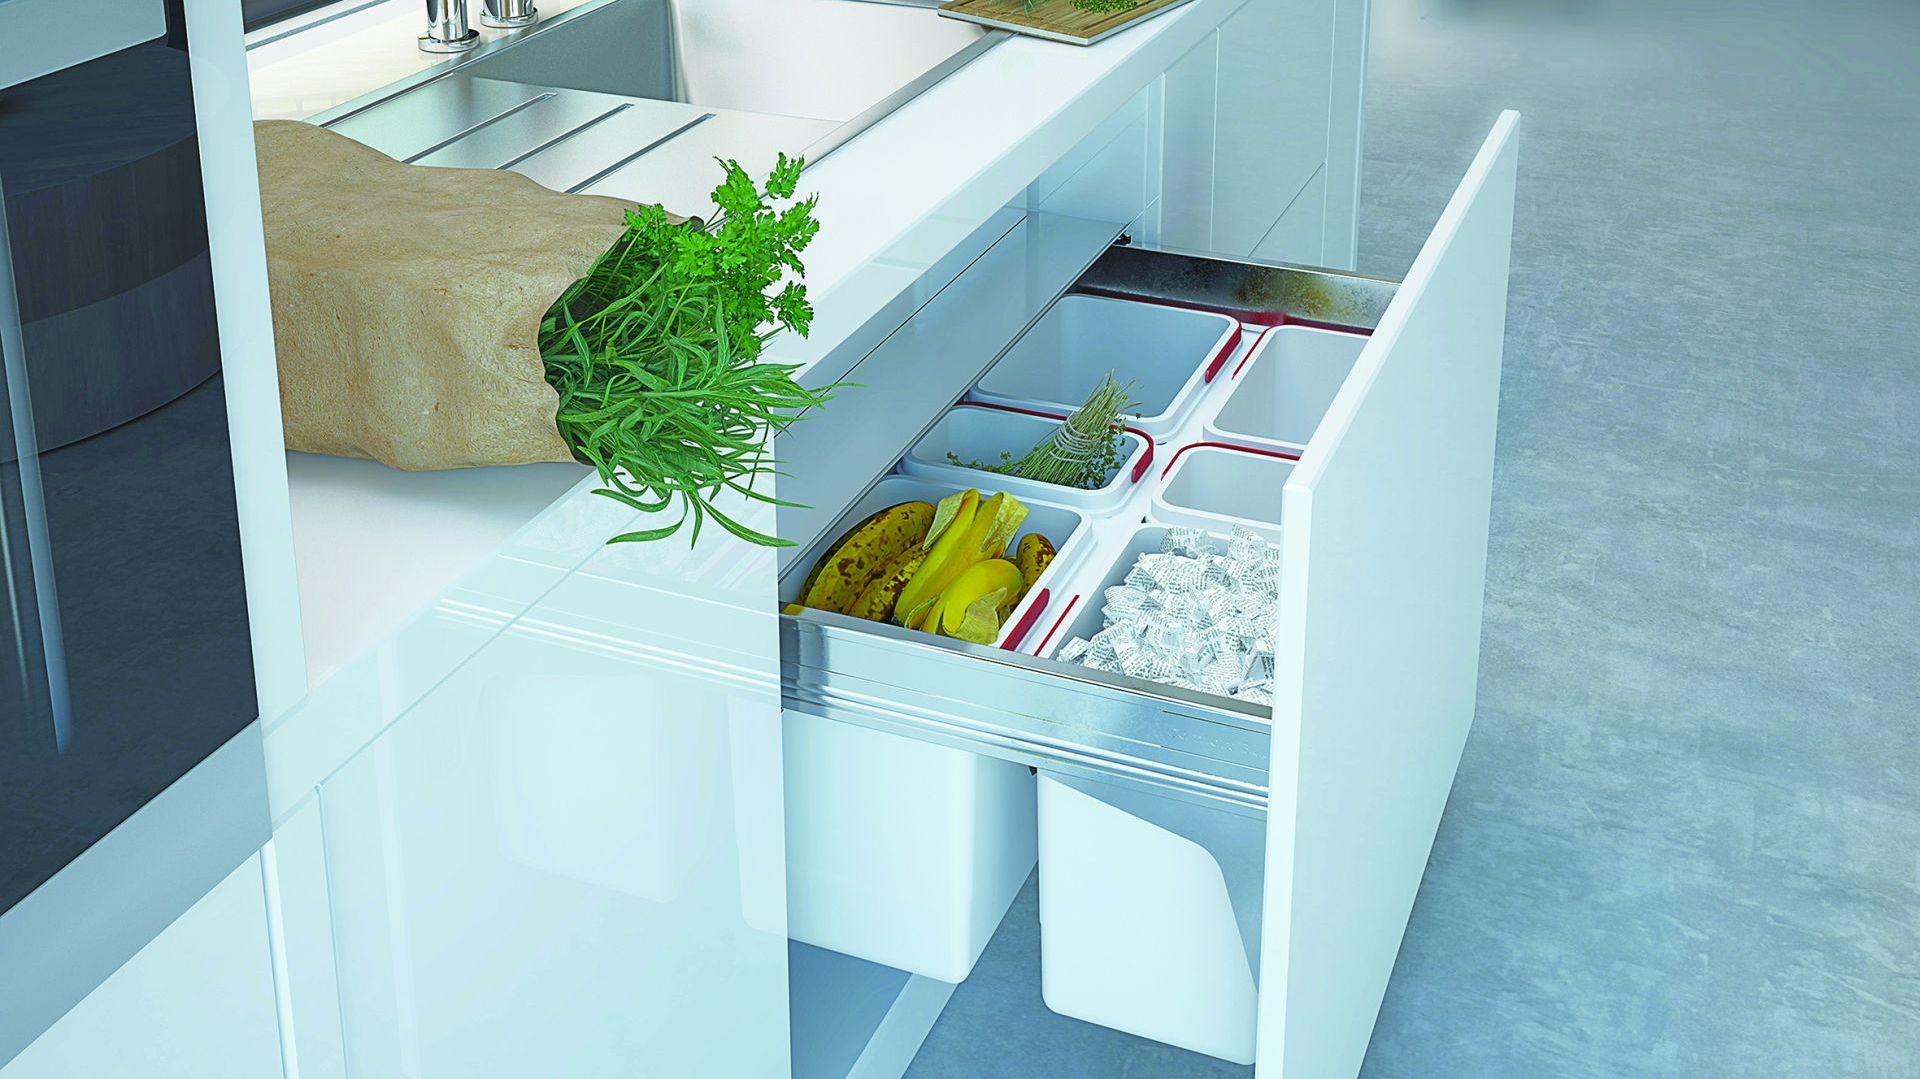 Akcesoria meblowe do kuchni - sposób na segregację odpadów